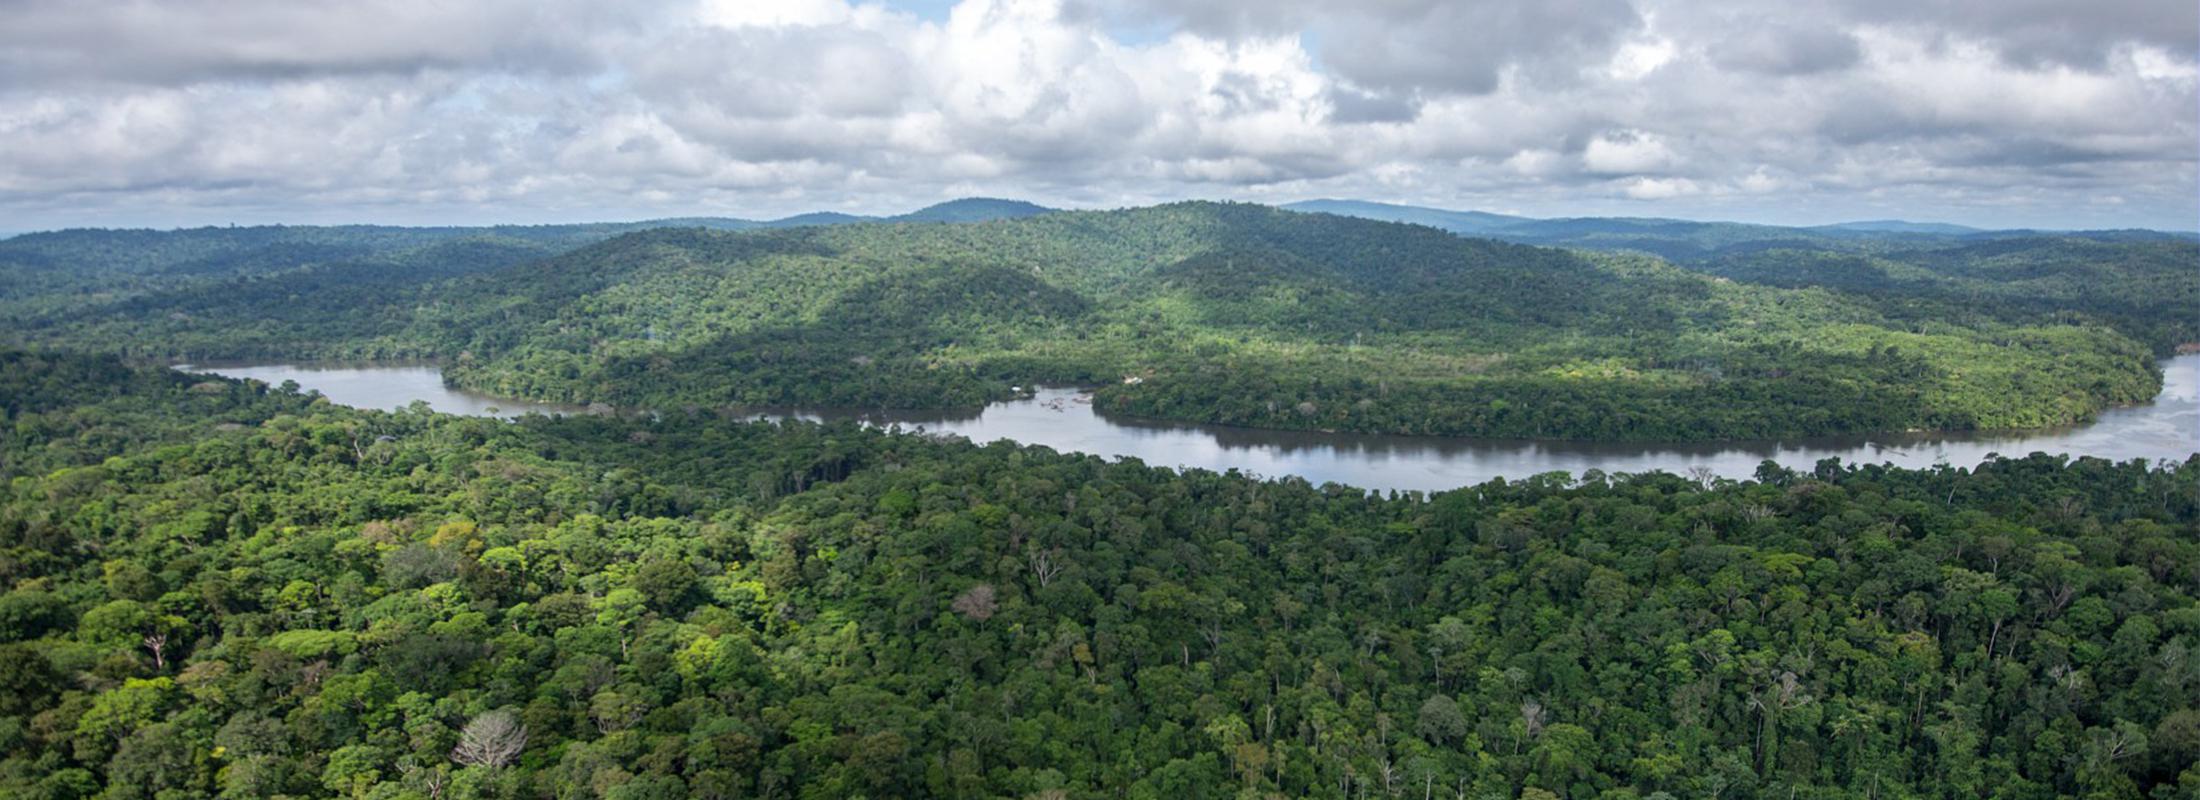 Feux en Amazonie : La Guyane, légitimité de la France dans la crise amazonienne